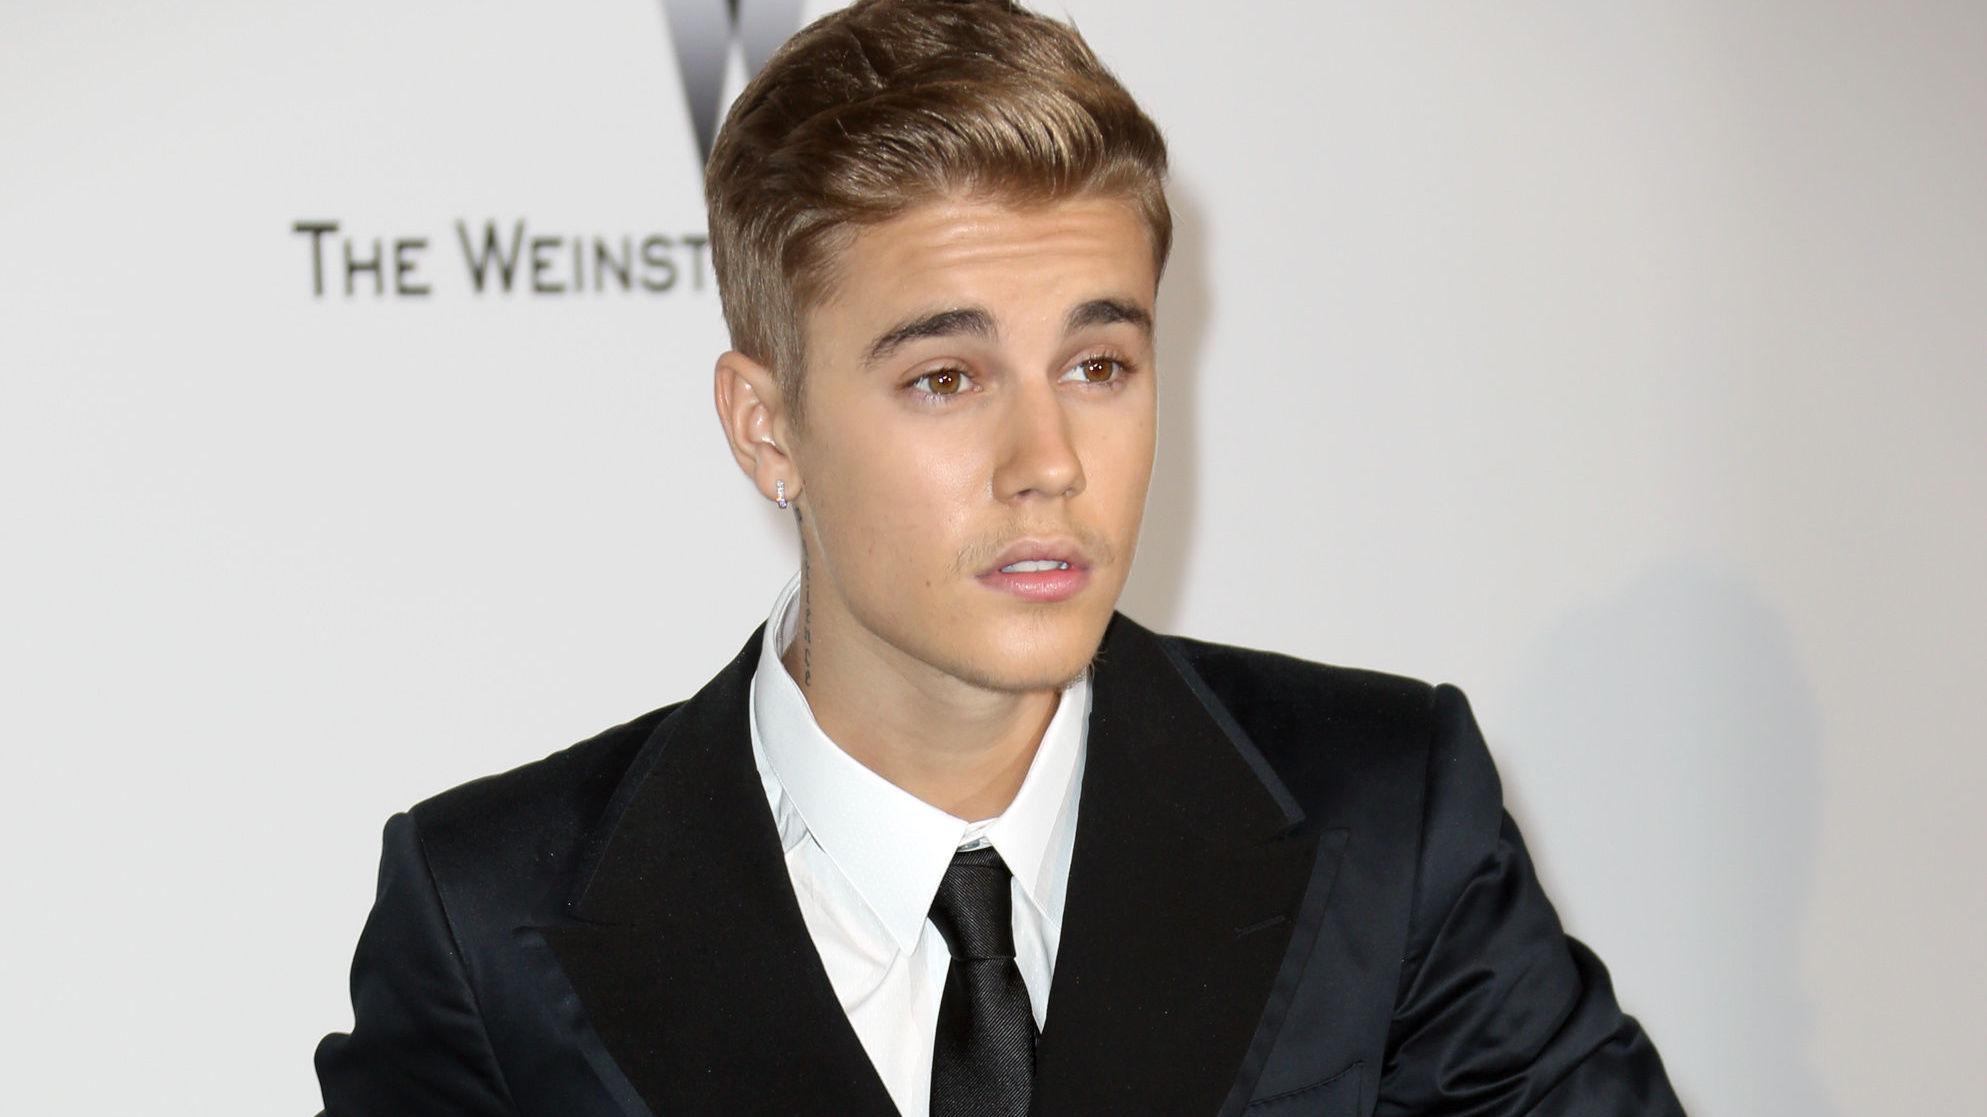 FÅR REFS: Fansen reagerer i sosiale medier på hvor mye Justin Bieber er retusjert i Calvin Klein-reklamen. Foto: NTB scanpix